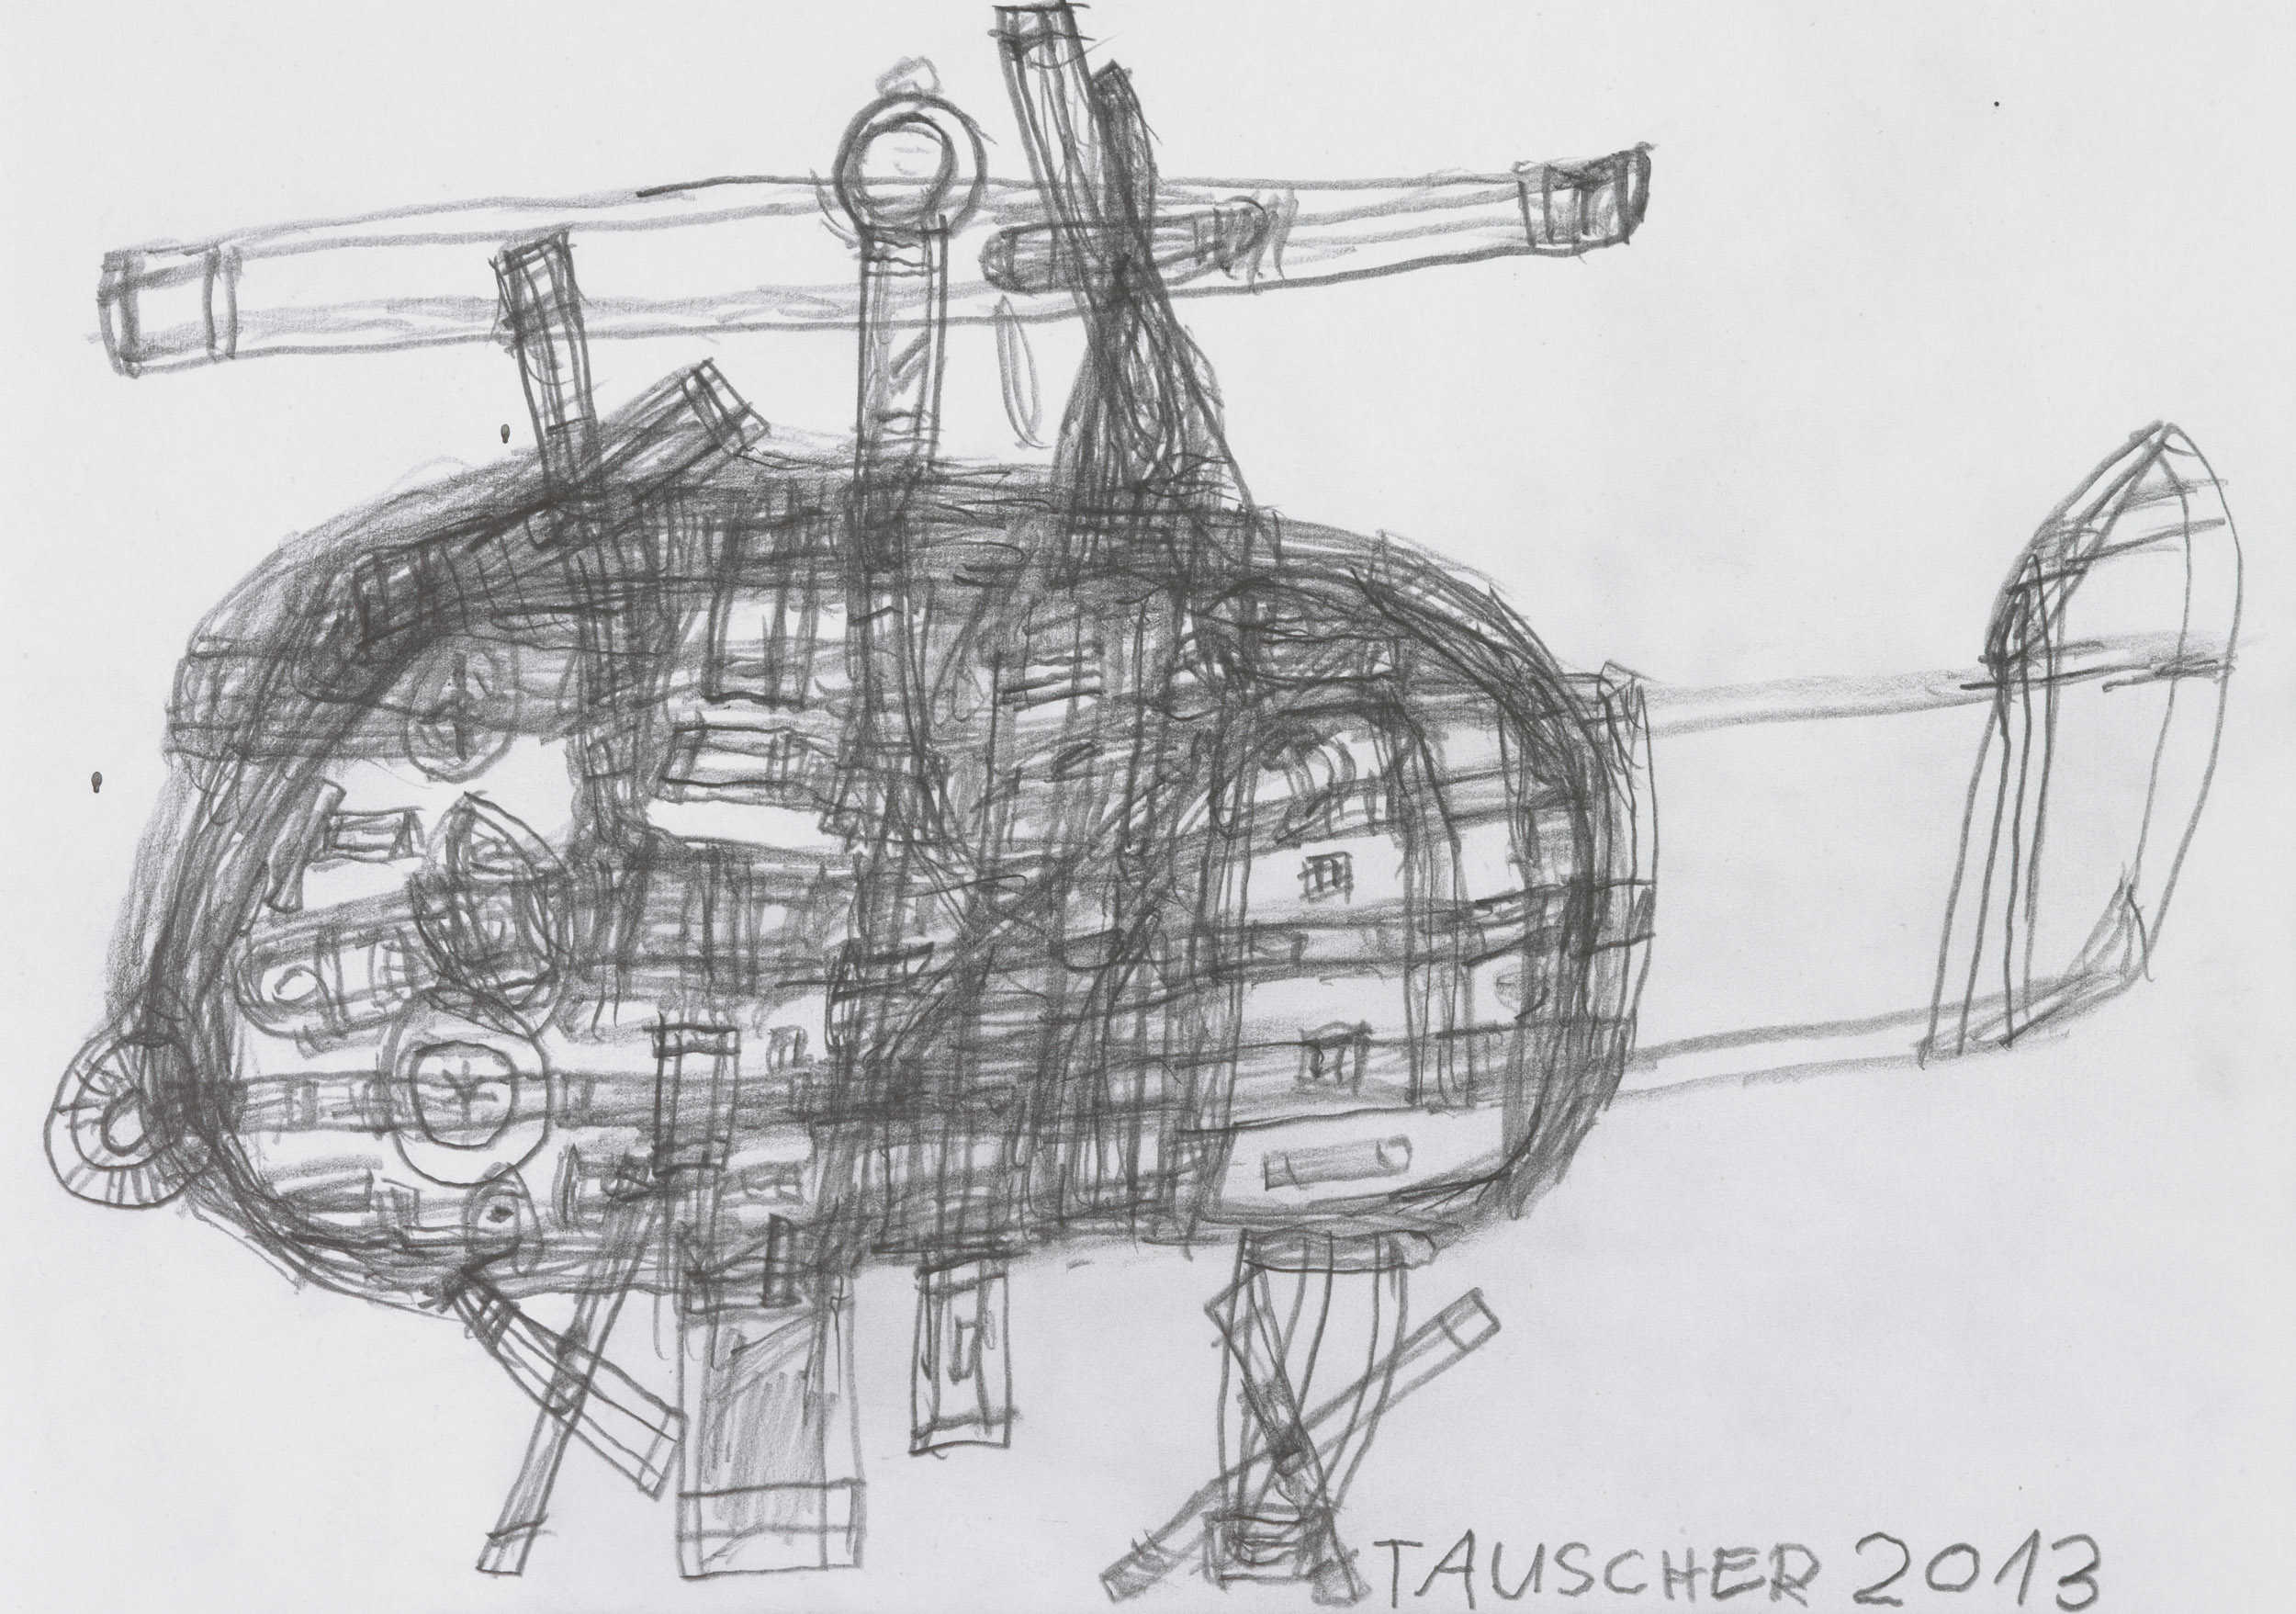 tauscher jürgen - hubschrauber/helicopter